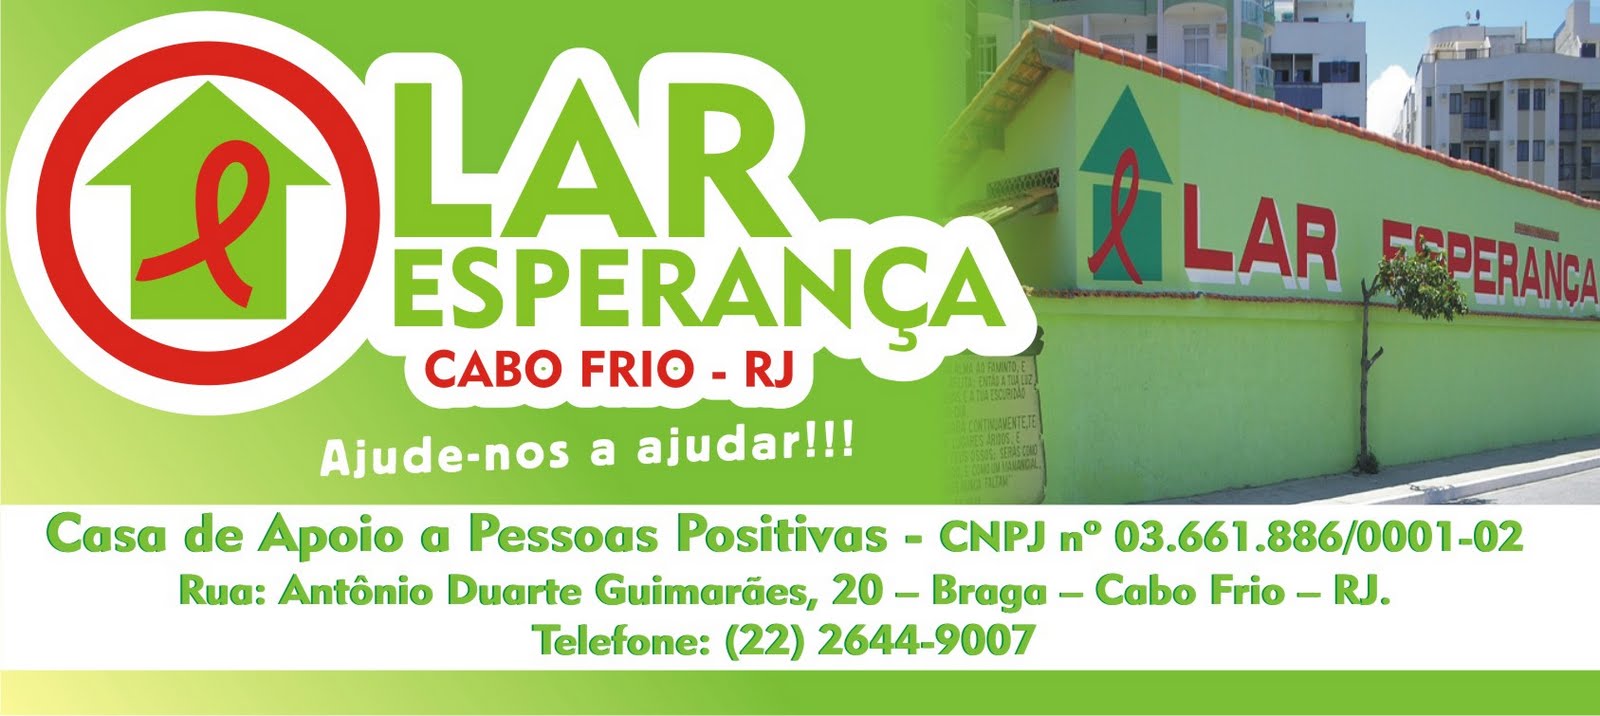 LAR ESPERANÇA - CABO FRIO